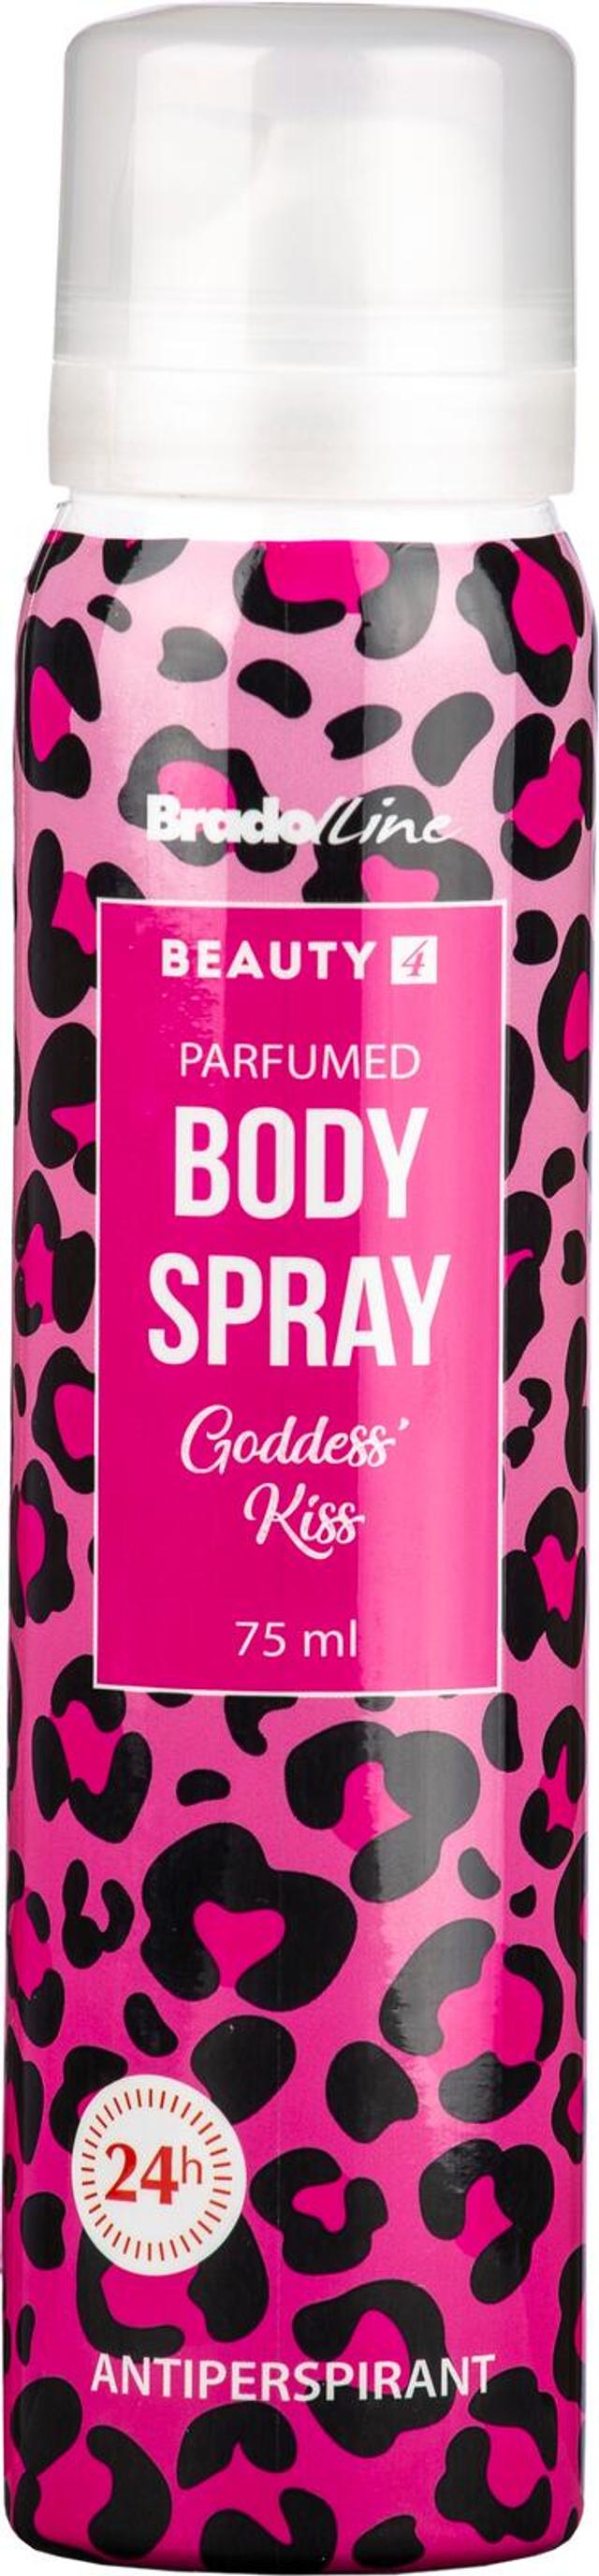 Beauty 4 Body Spray for Women Goddess Kiss 75 ml